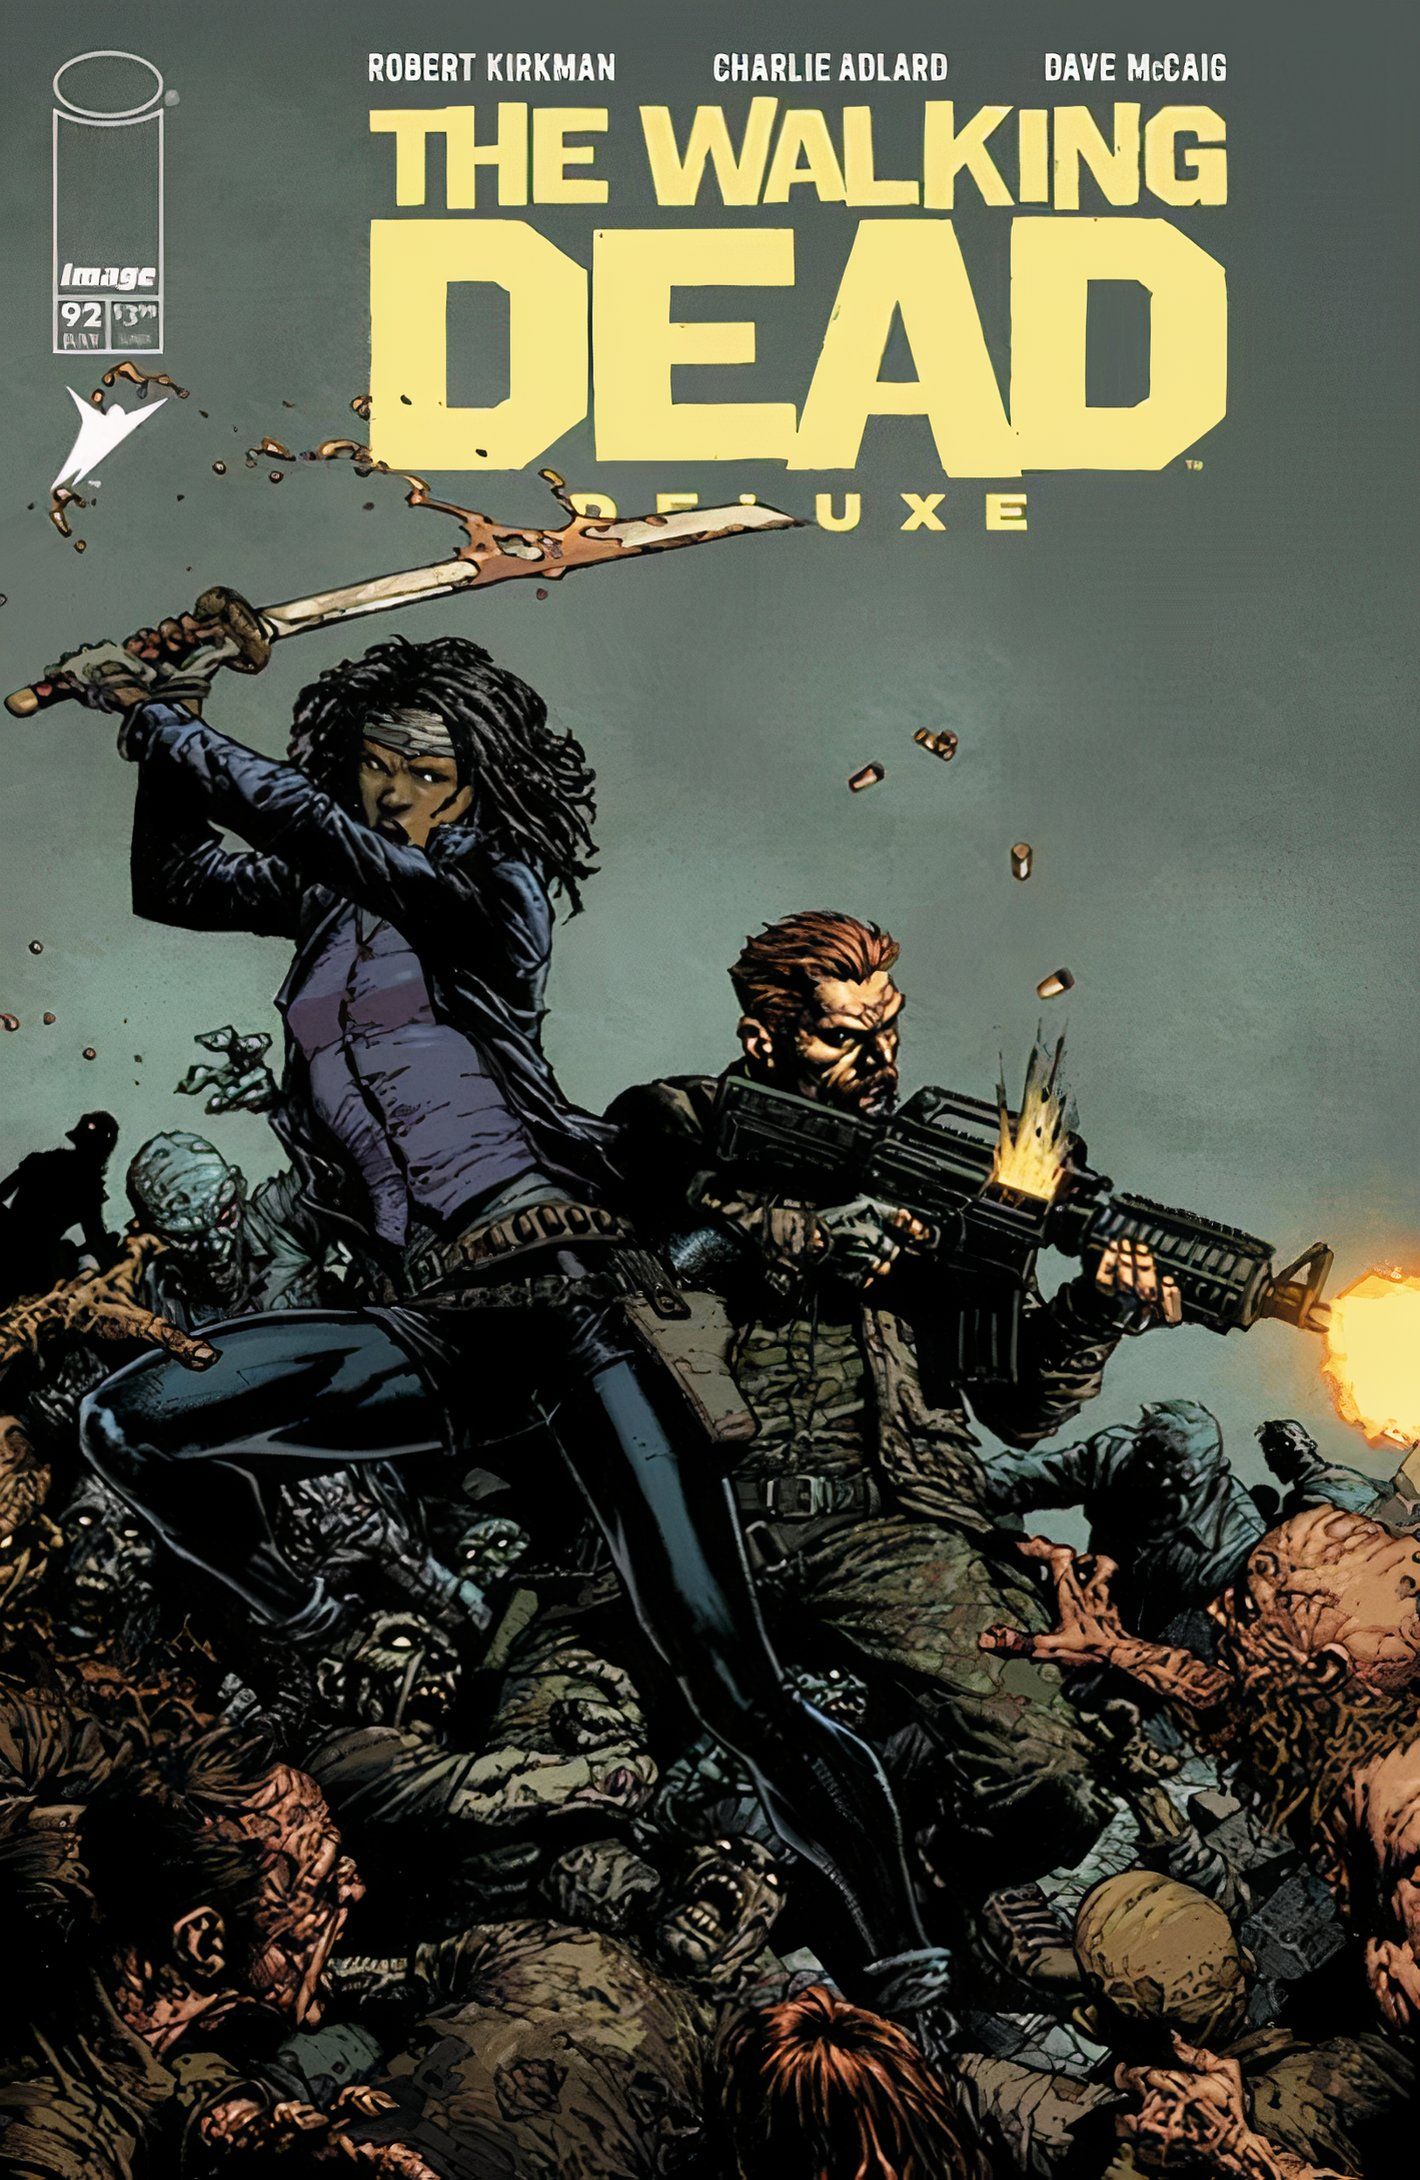 Capa da revista The Walking Dead Deluxe #92, com Rick e Michonne em cima de uma pilha de corpos de zumbis